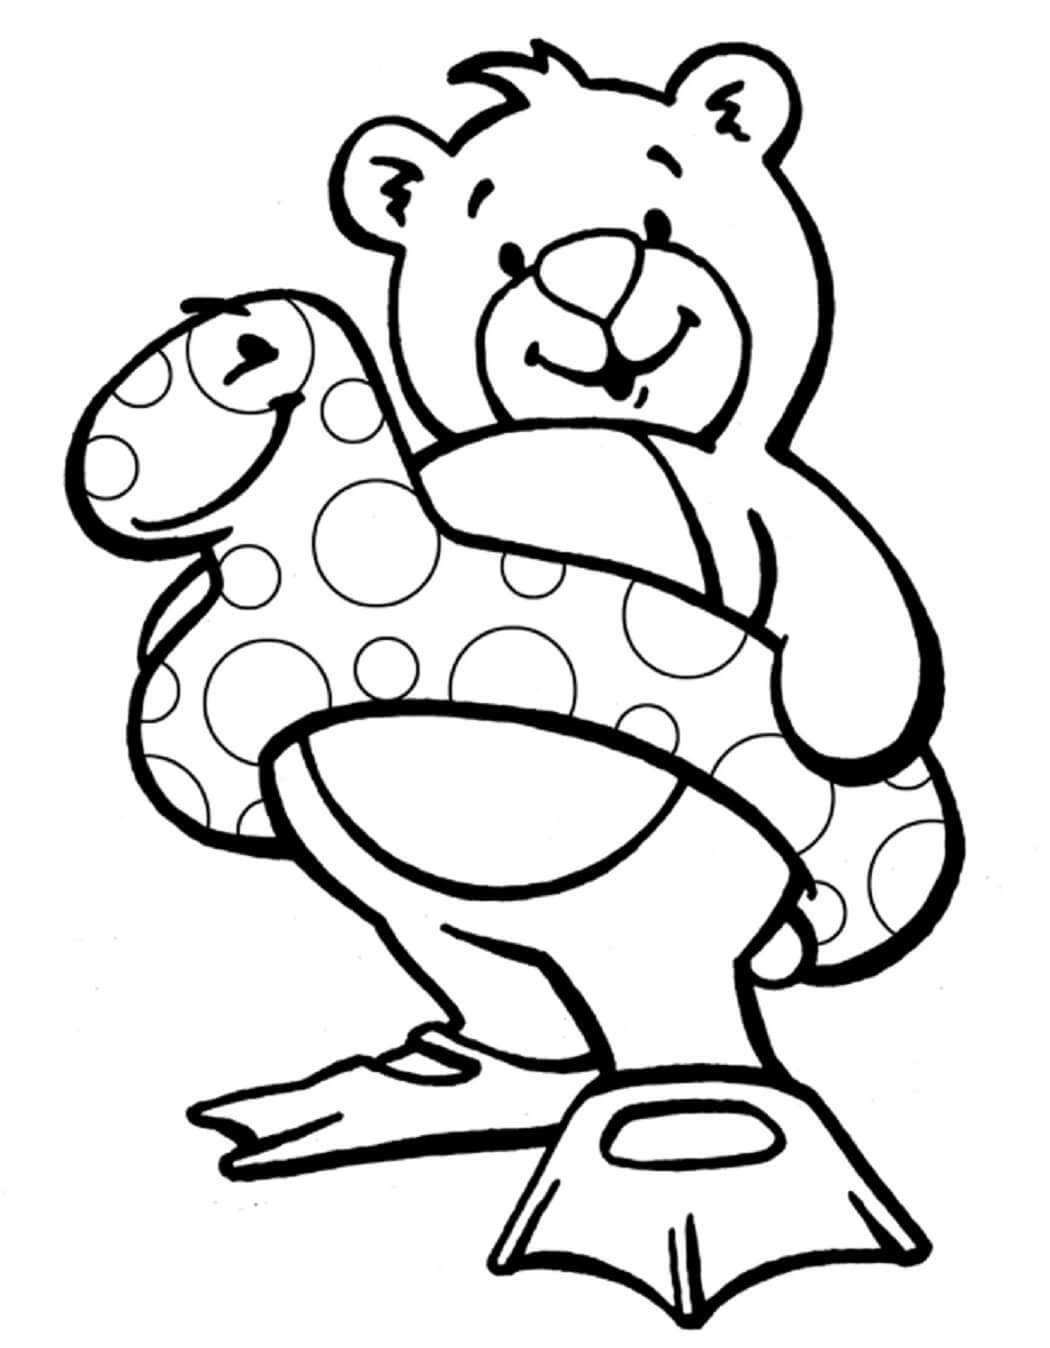 웃고 있는 곰이 수영하러 갑니다 coloring page